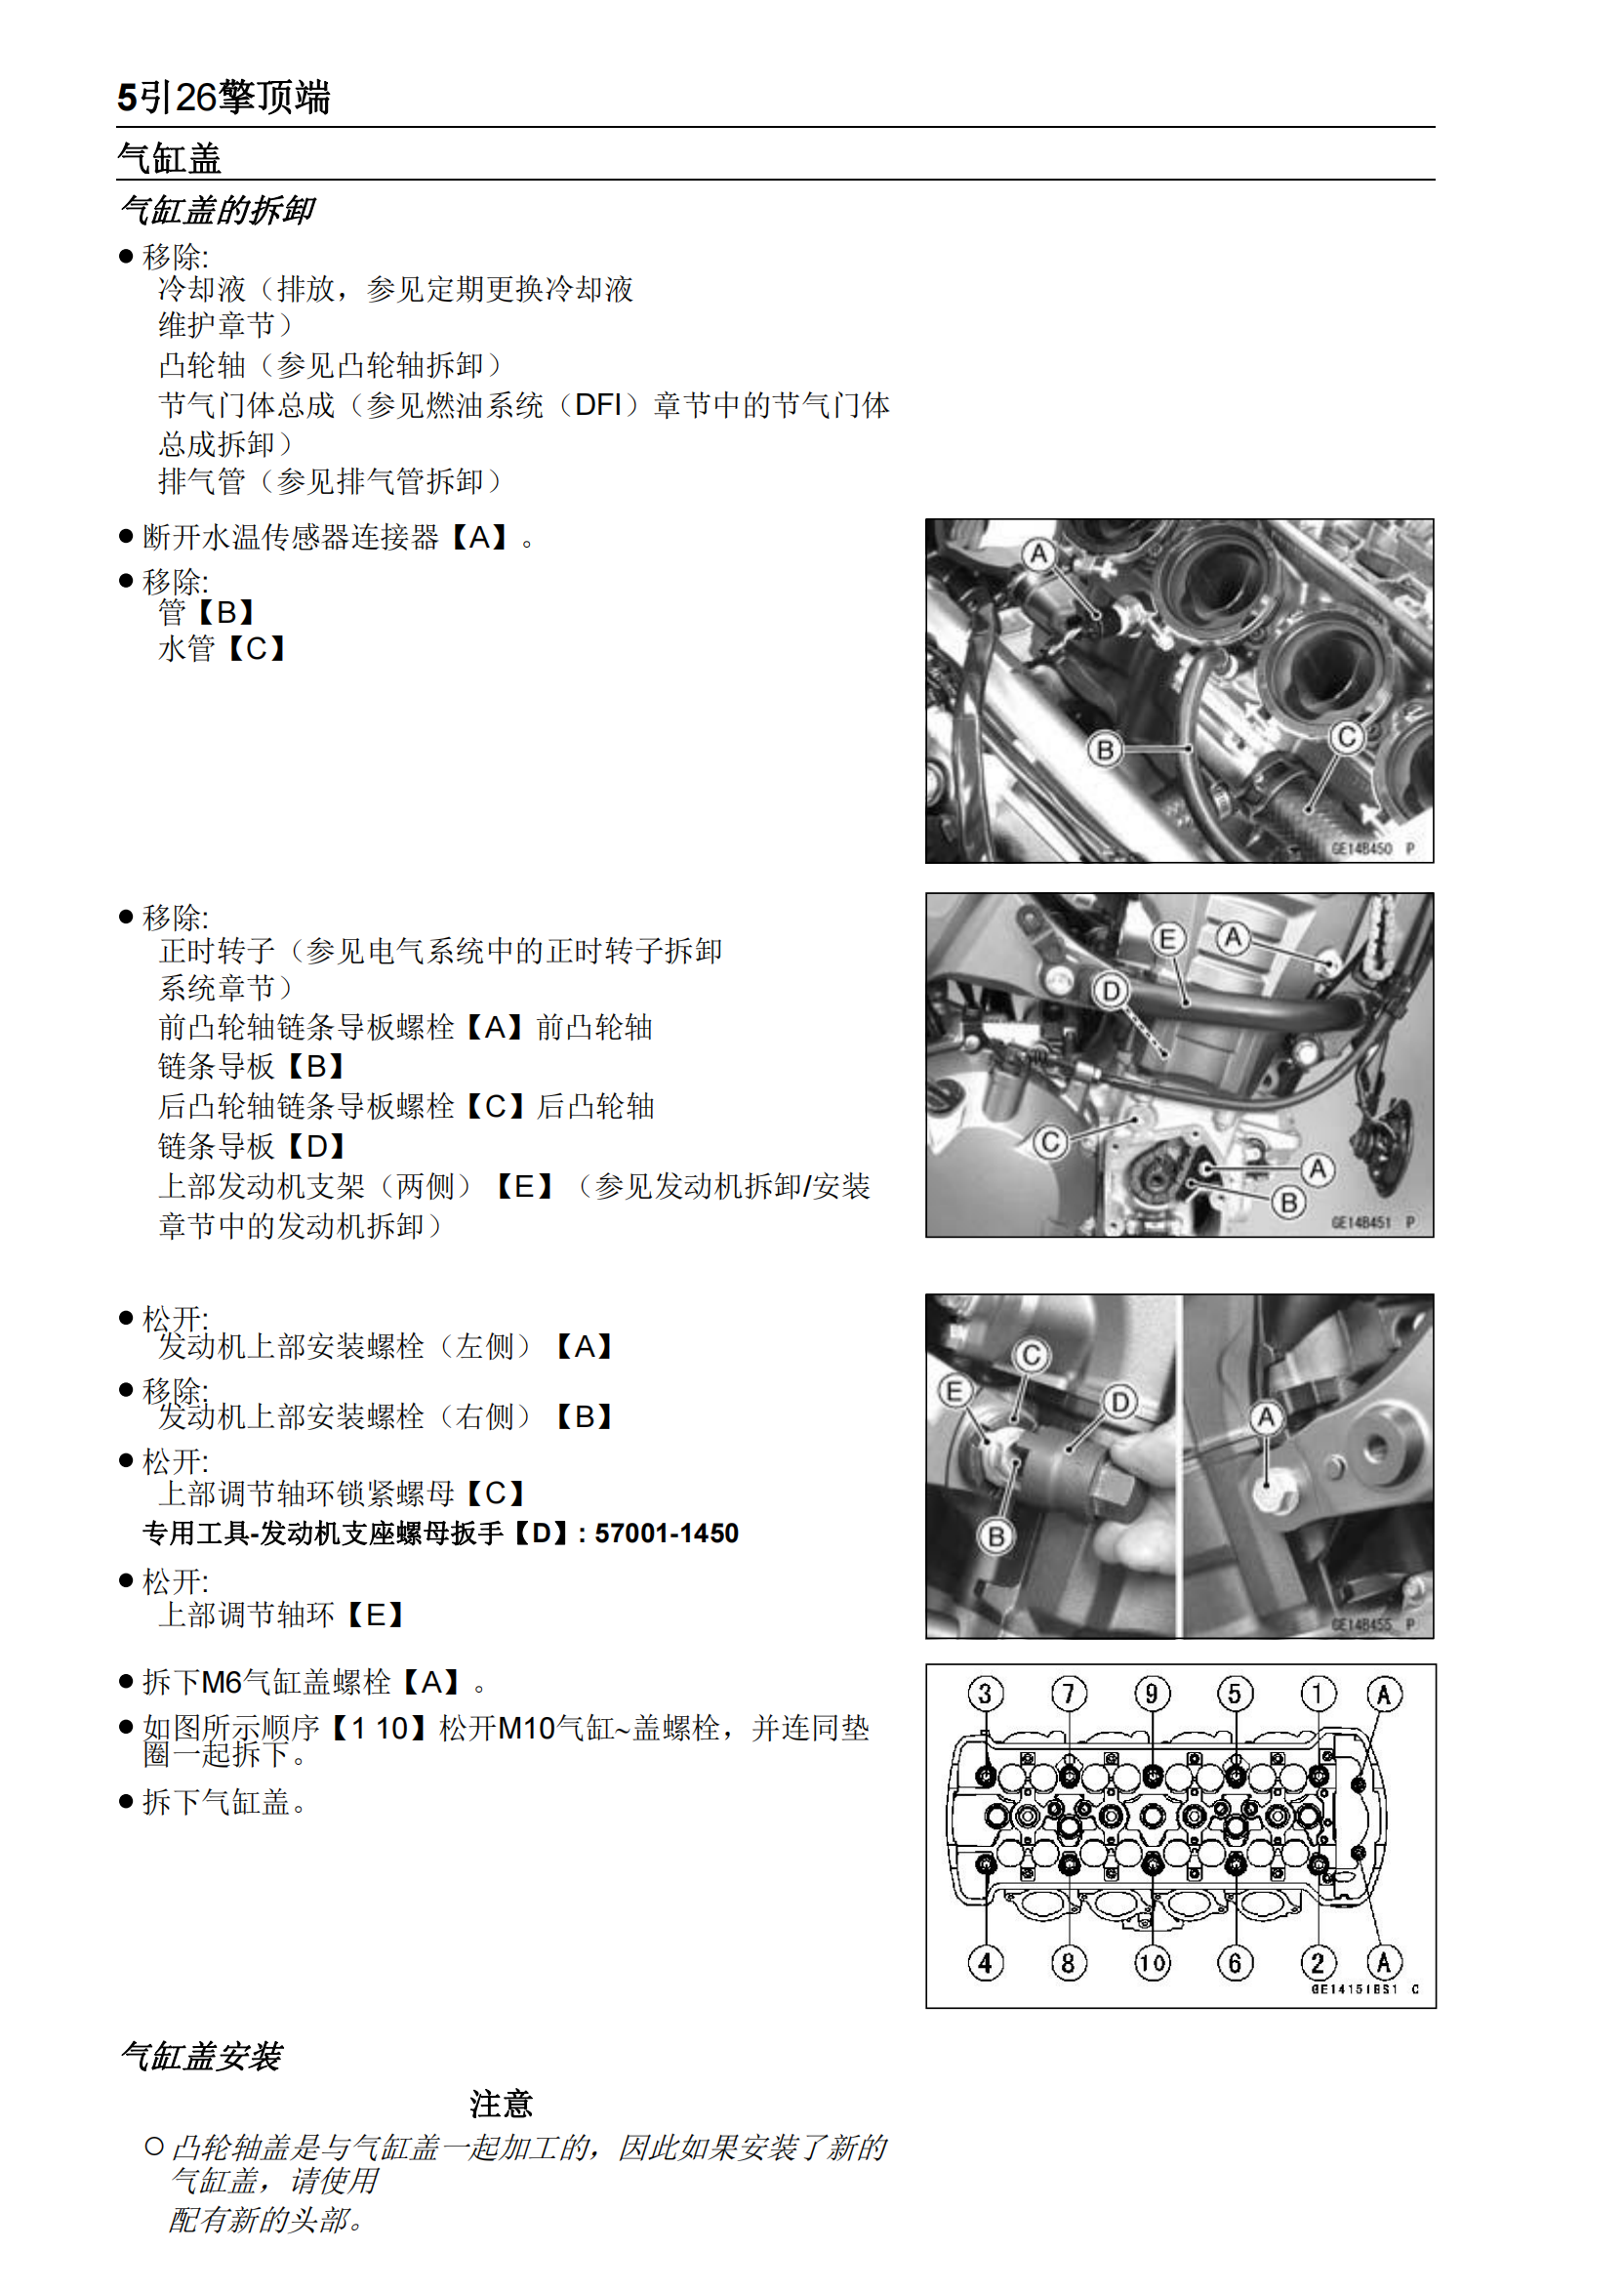 简体中文2011-2014年川崎异兽1000 Kawasaki Versys 1000 维修手册插图4